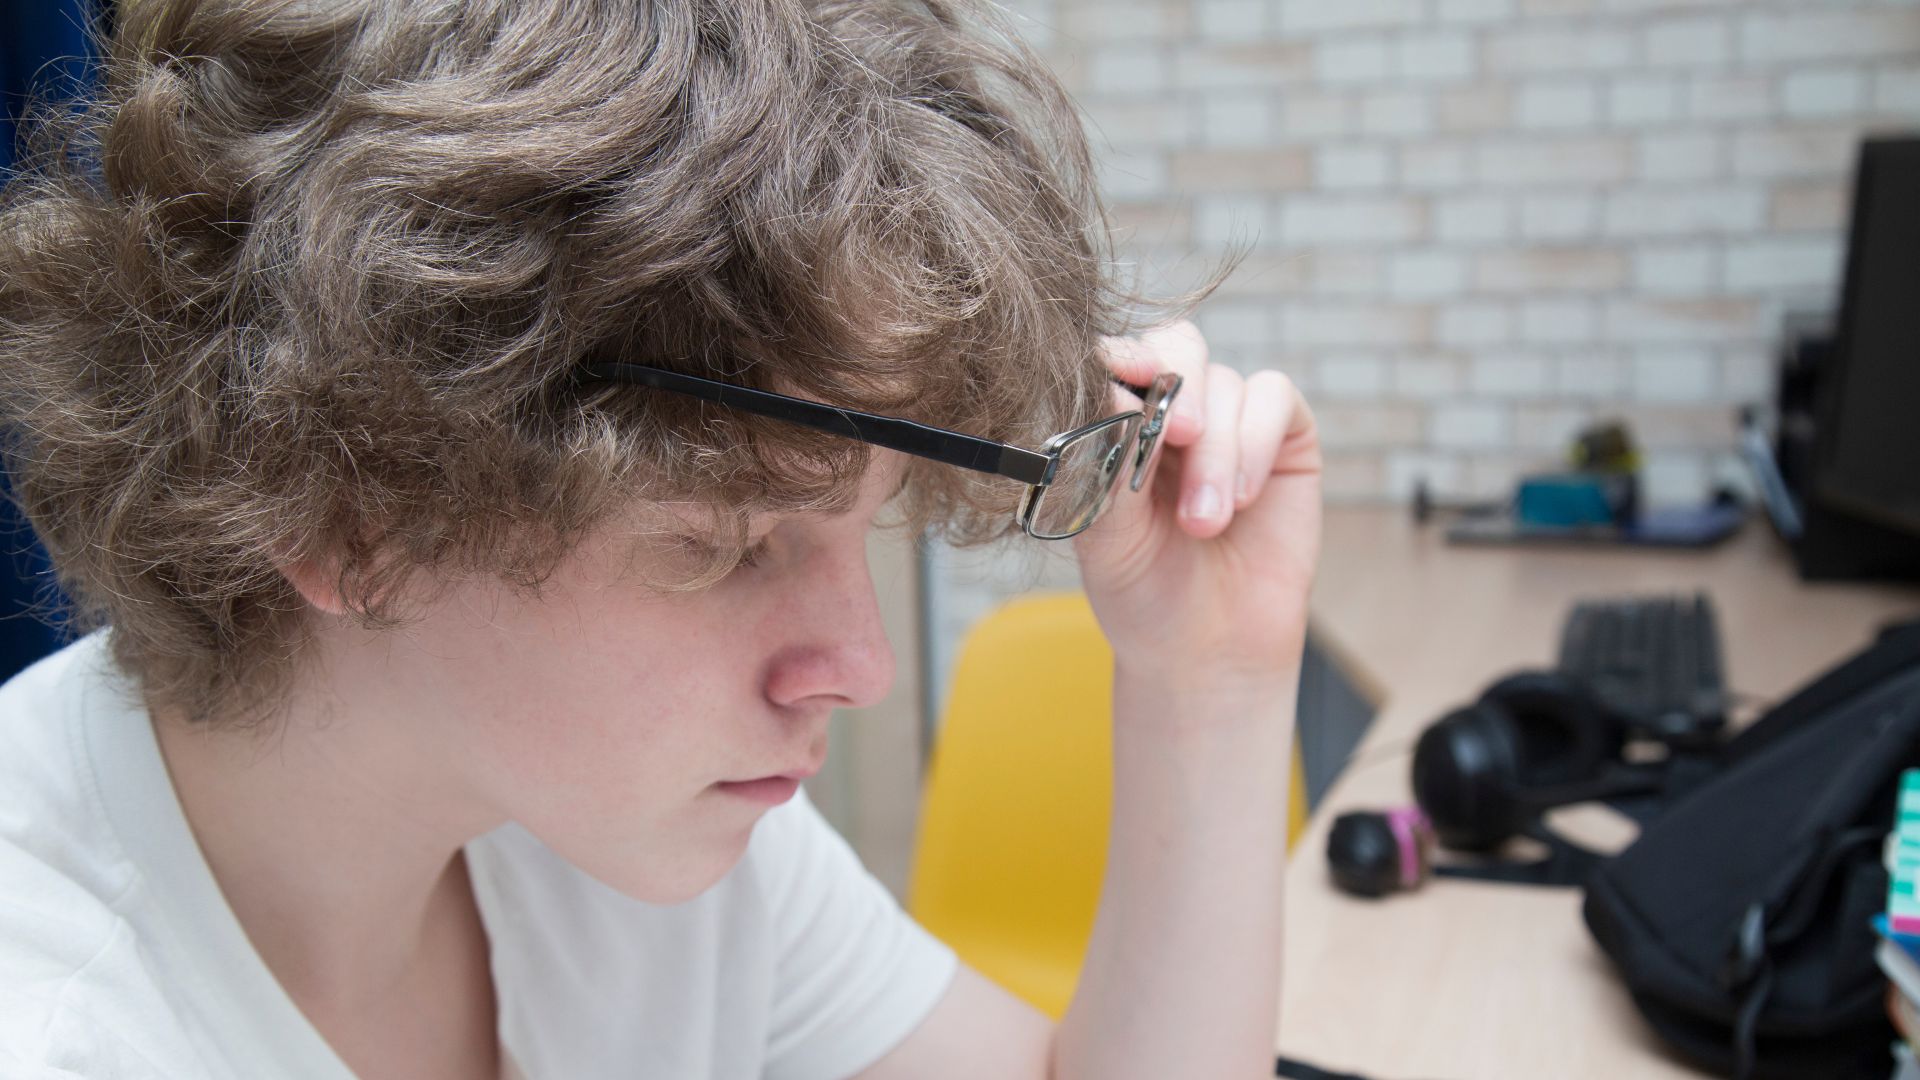 Miopía y astigmatismo: ¿cómo afectan tu visión?